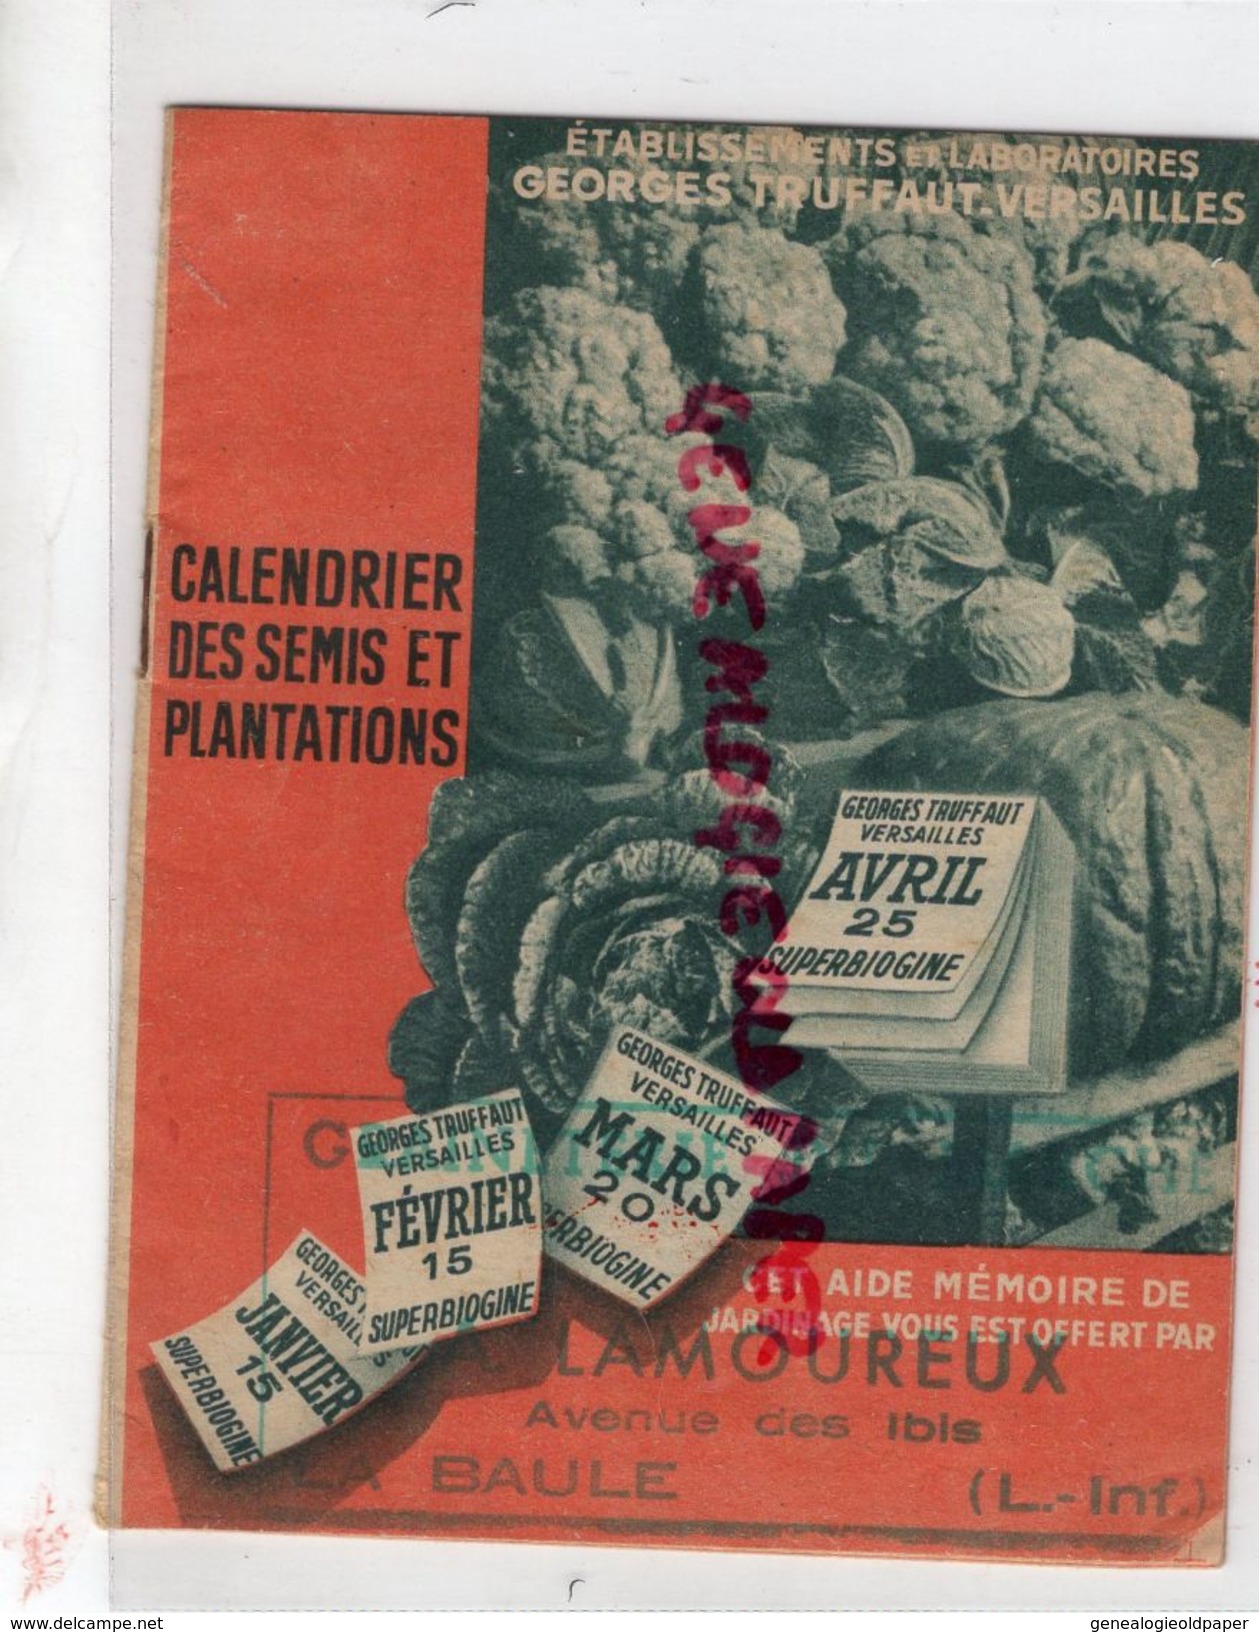 44- LA BAULE- A. LAMOUREUX AVENUE DES IBIS- HORTICULTURE CALENDRIER DES SEMIS PLANTATIONS-GEORGES TRUFFAT VERSAILLES- - Landwirtschaft